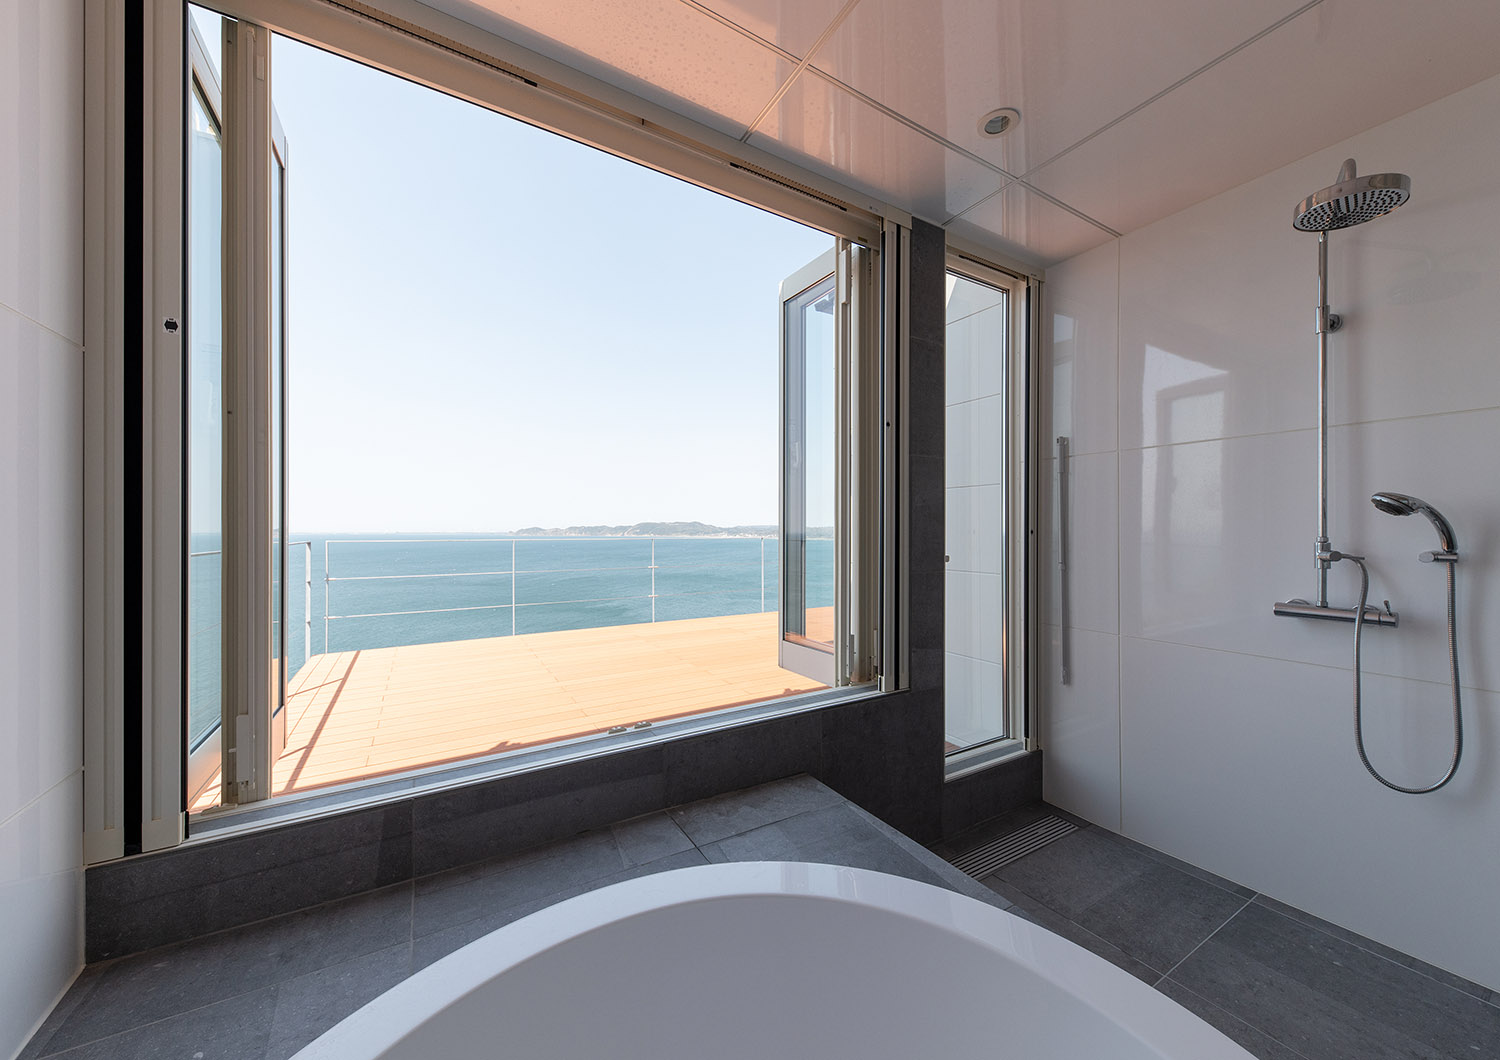 大きな窓から海が見渡せる開放感のある浴室・デザイン住宅